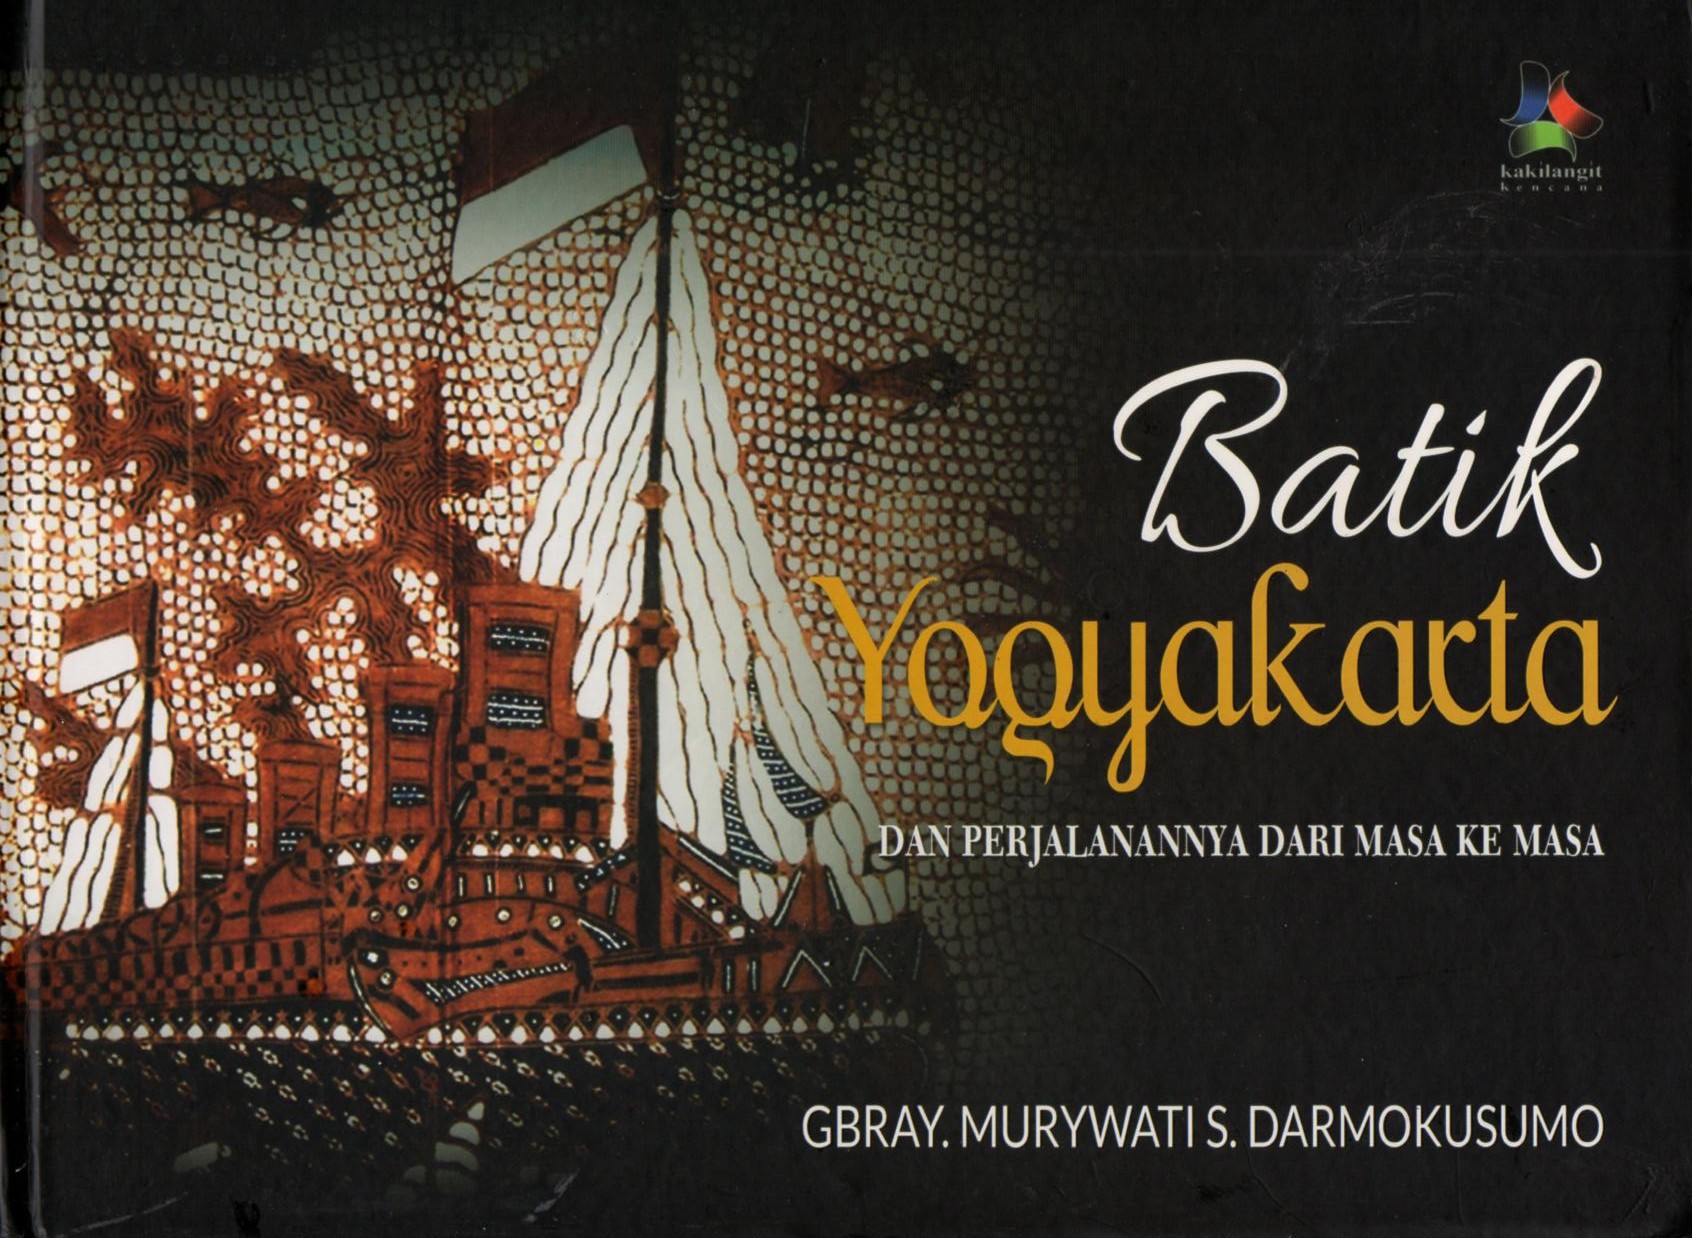 Batik Yogyakarta dan perjalanan dari masa ke masa